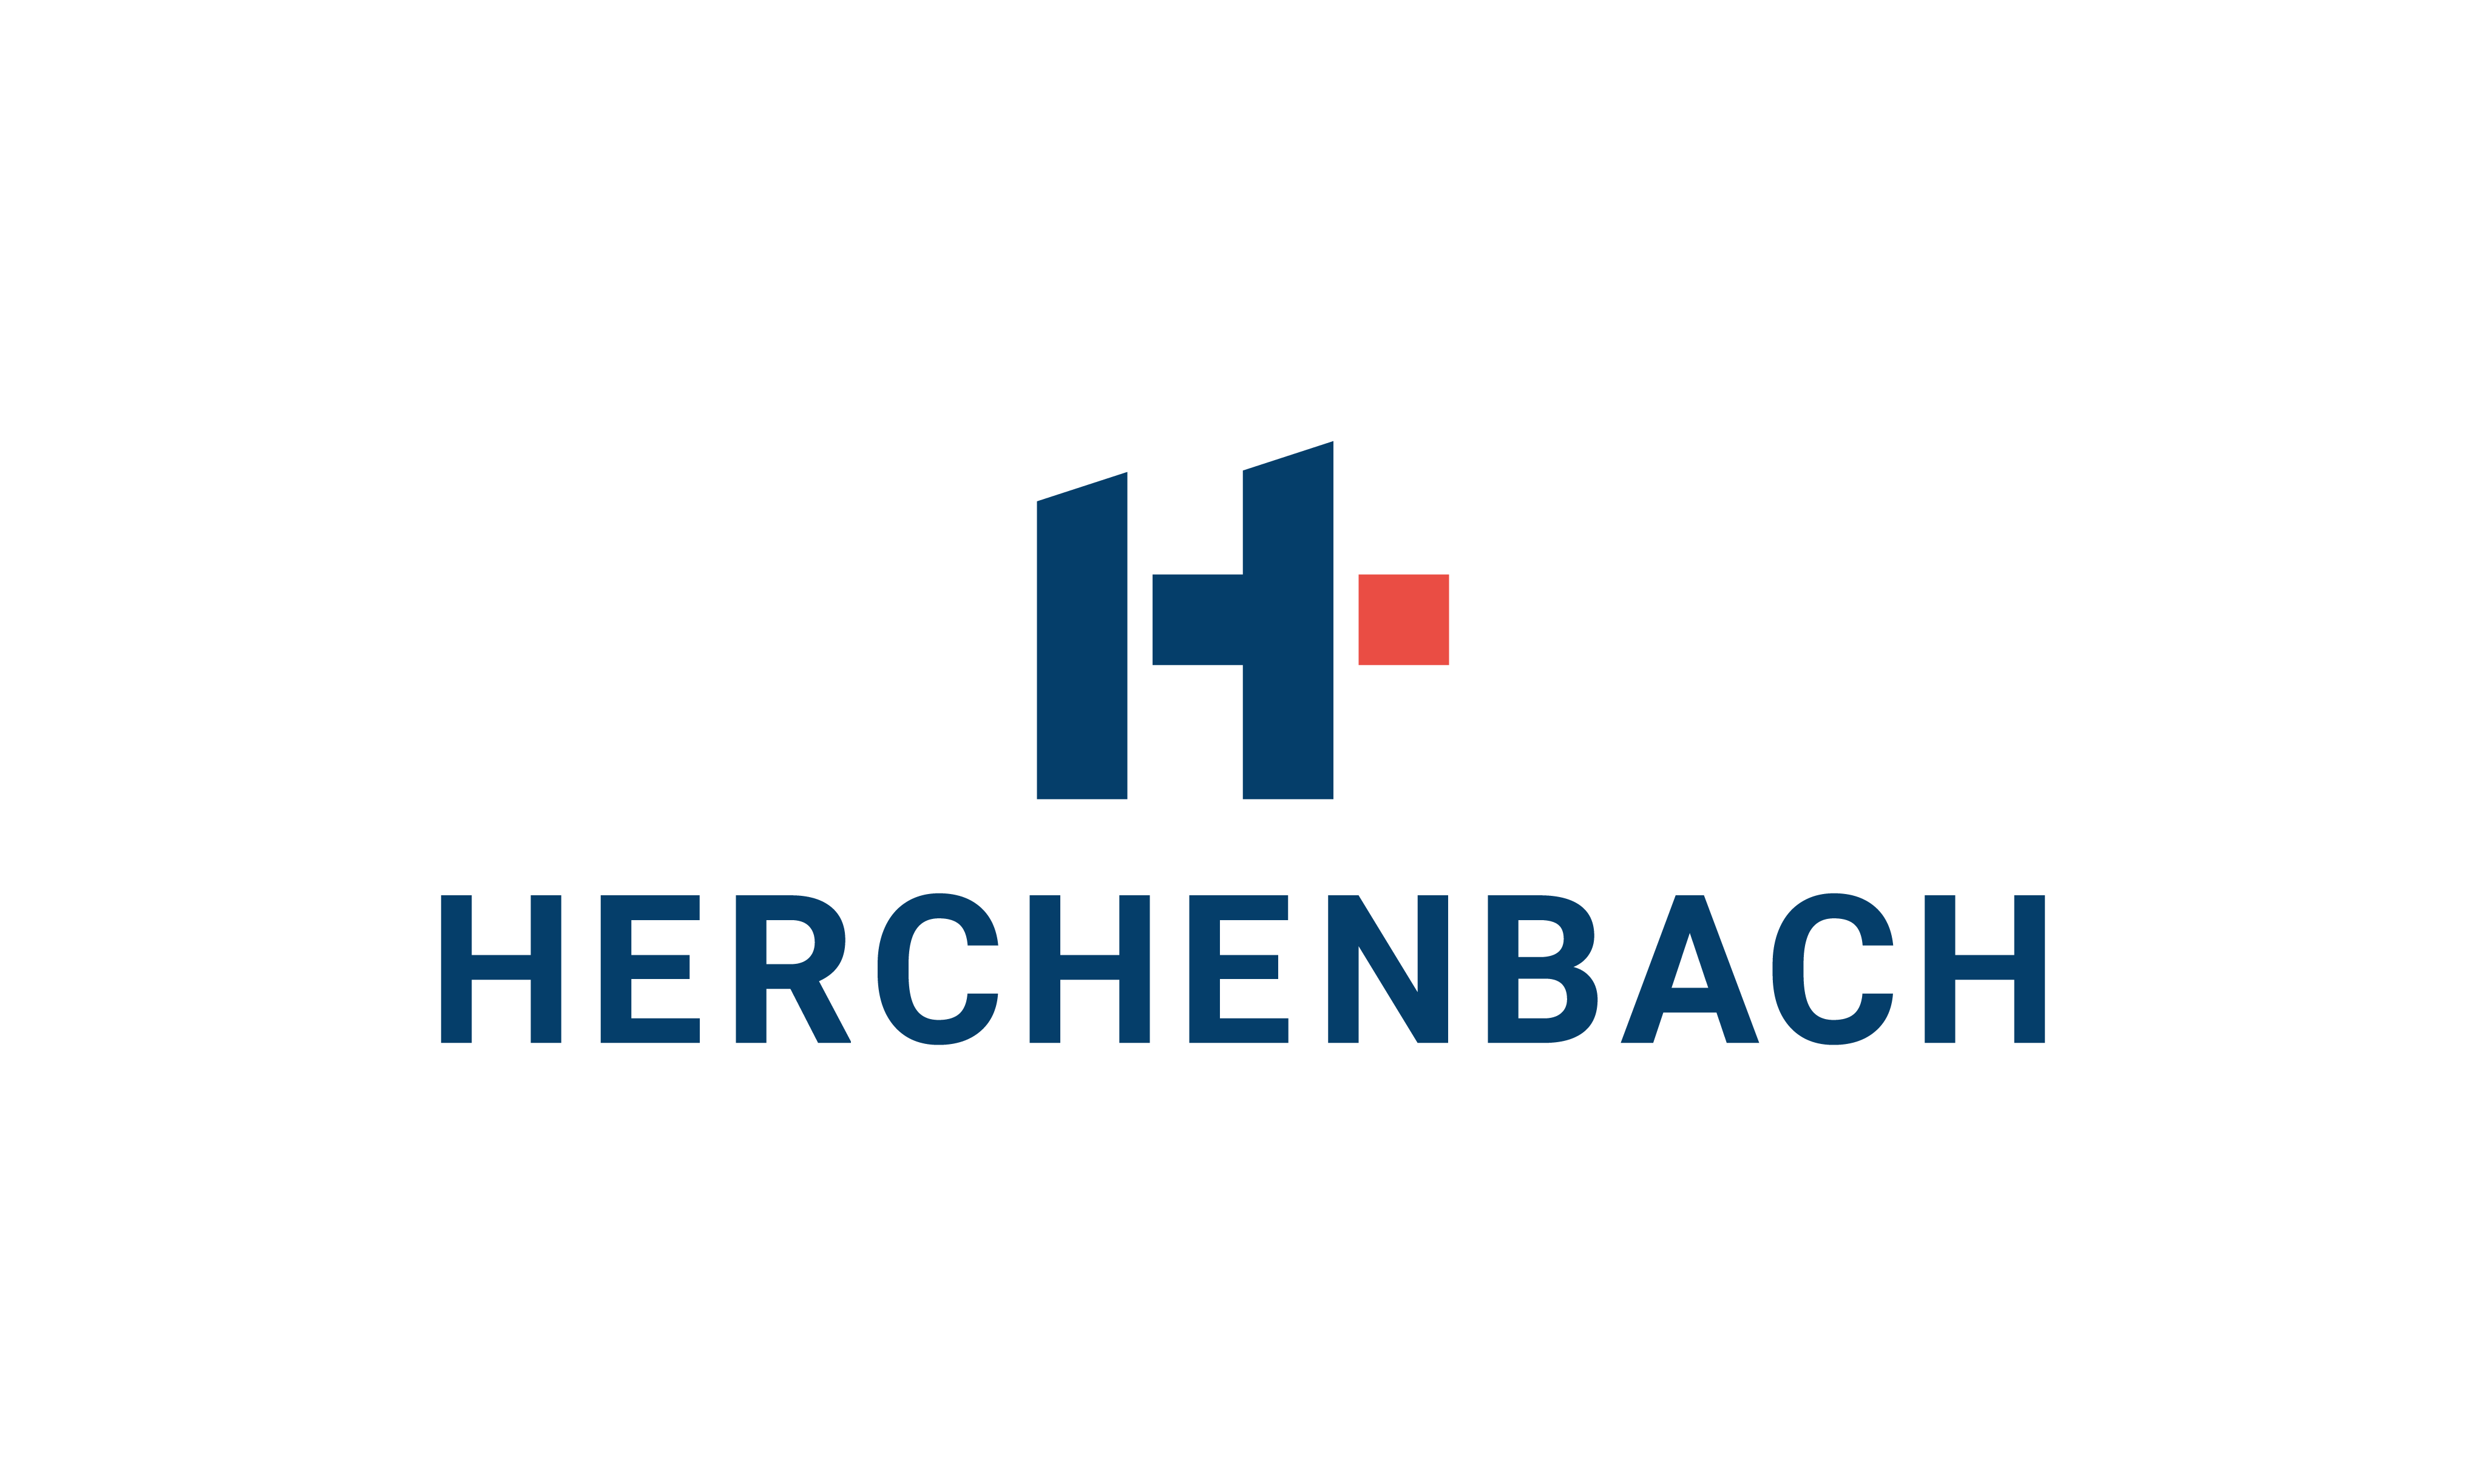 Herchenbach logo